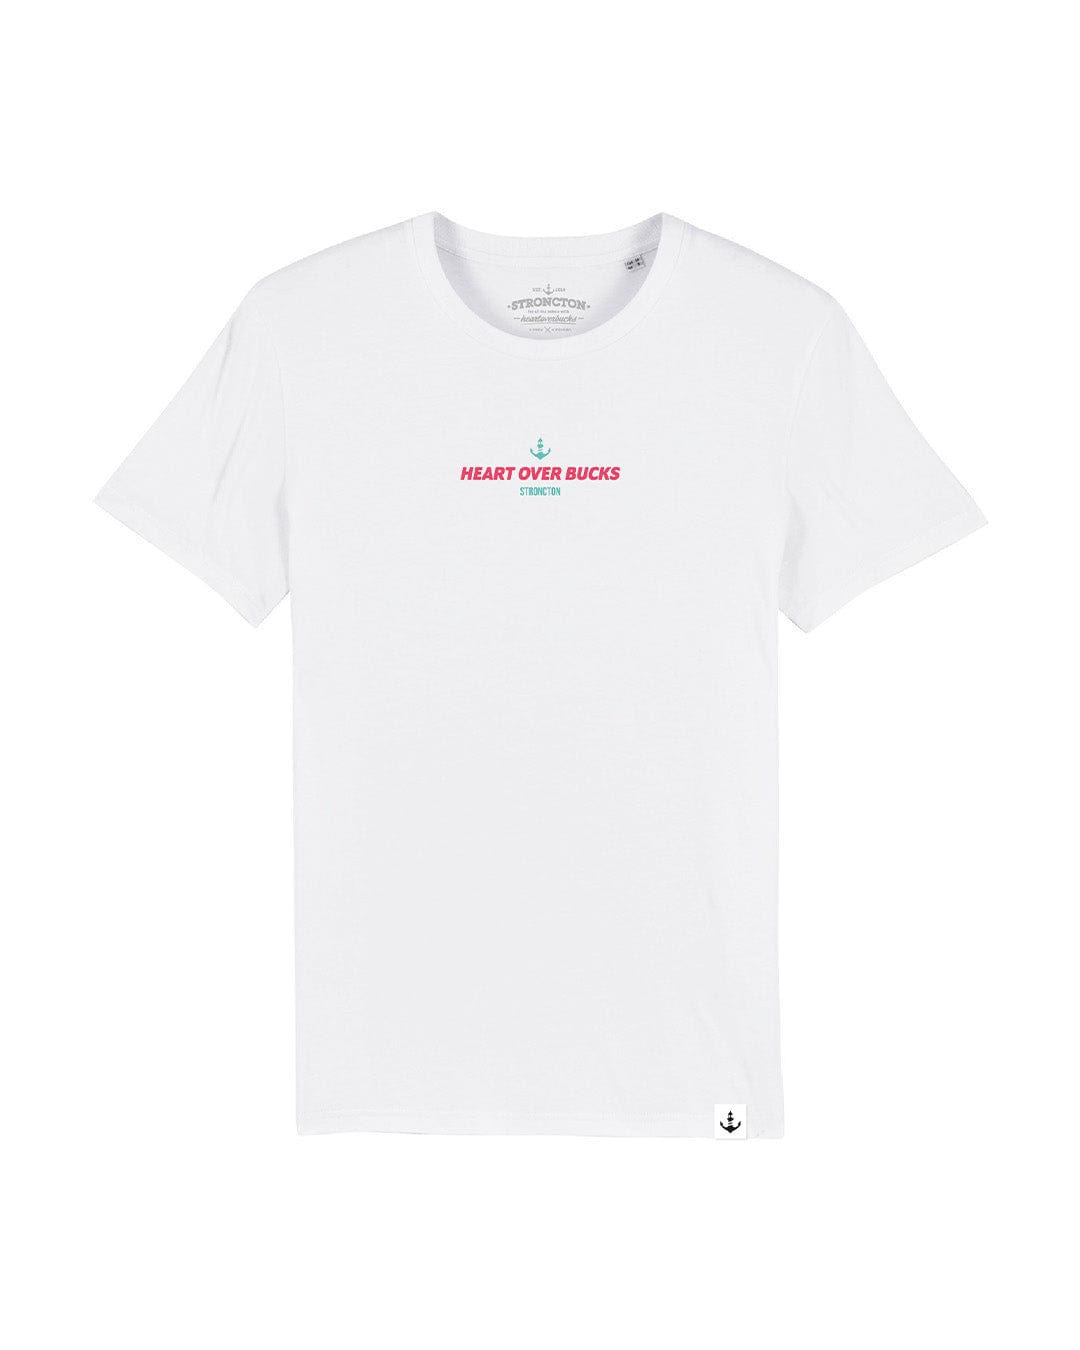 Heart Over Bucks Unisex T-Shirt - White